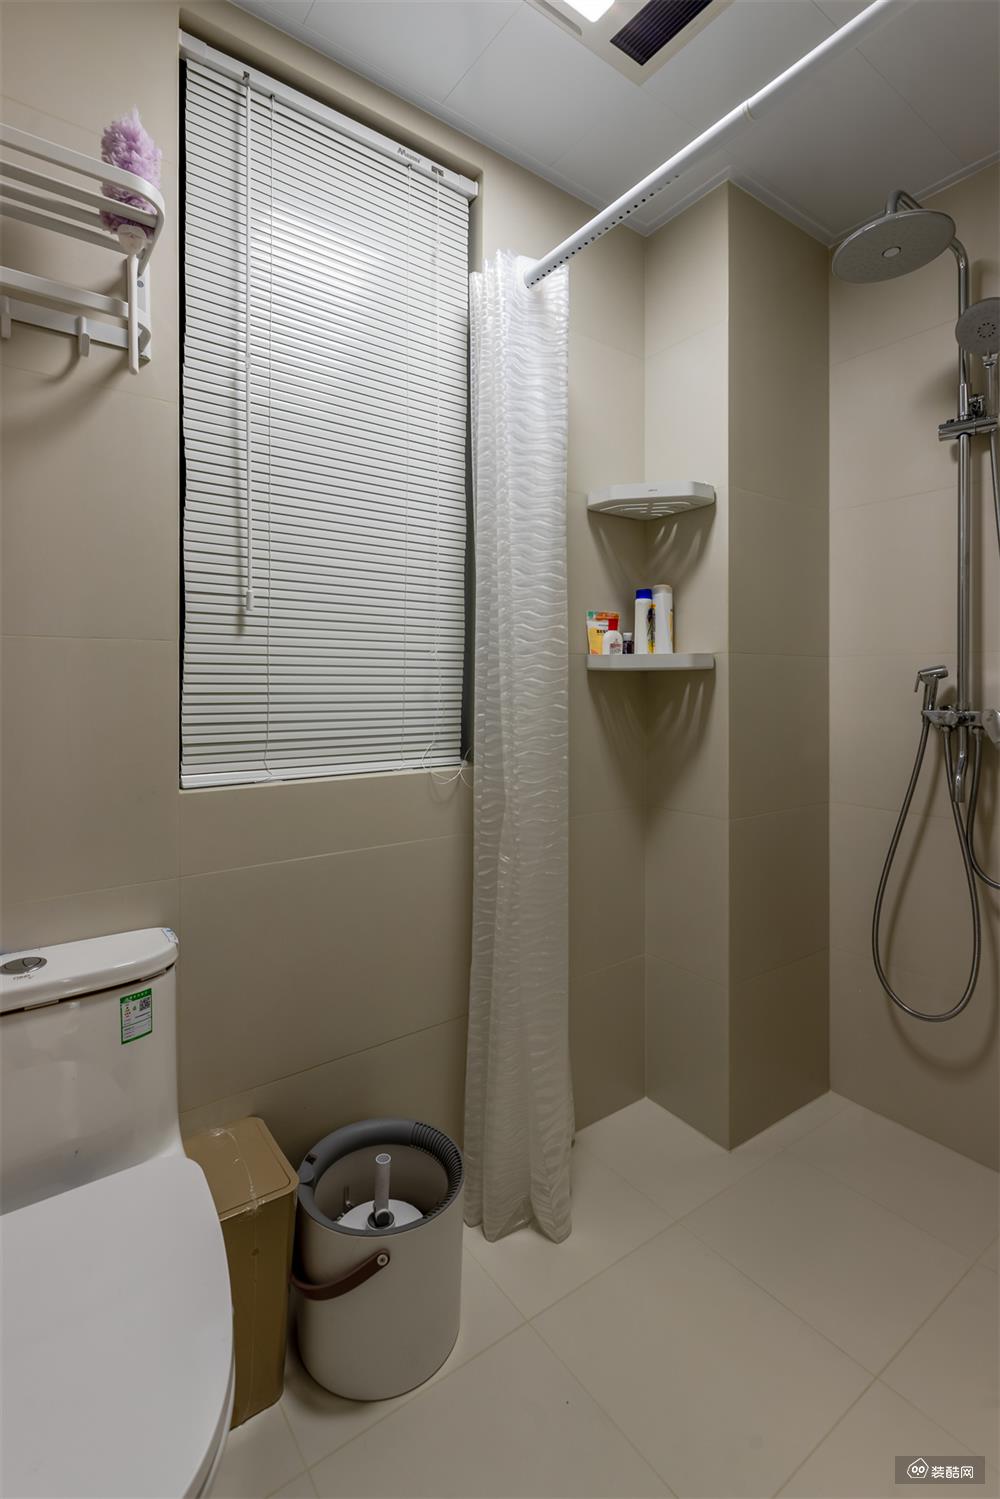 至于湿区部分，马桶、淋浴有效分区不重叠，避免潮湿，能更好地发挥各自功用。内部铺贴墙地一体米色砖，纯色搭配更显档次，对于保持优良卫生环境也有极大帮助。